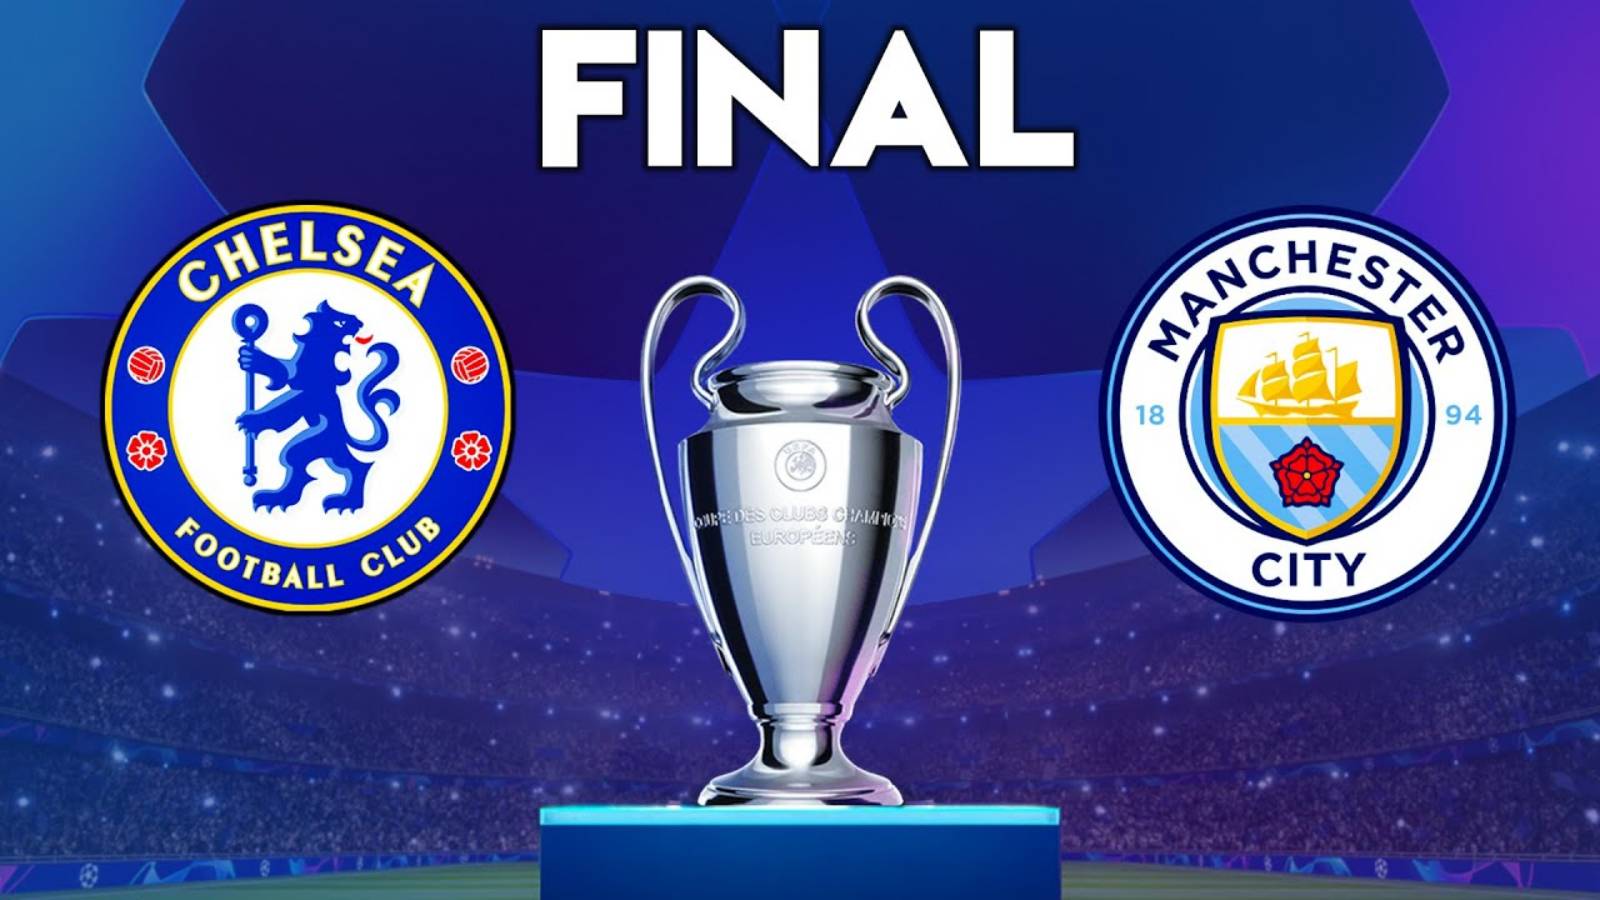 Liga de Campeones EN VIVO Manchester City - Final Chelsea